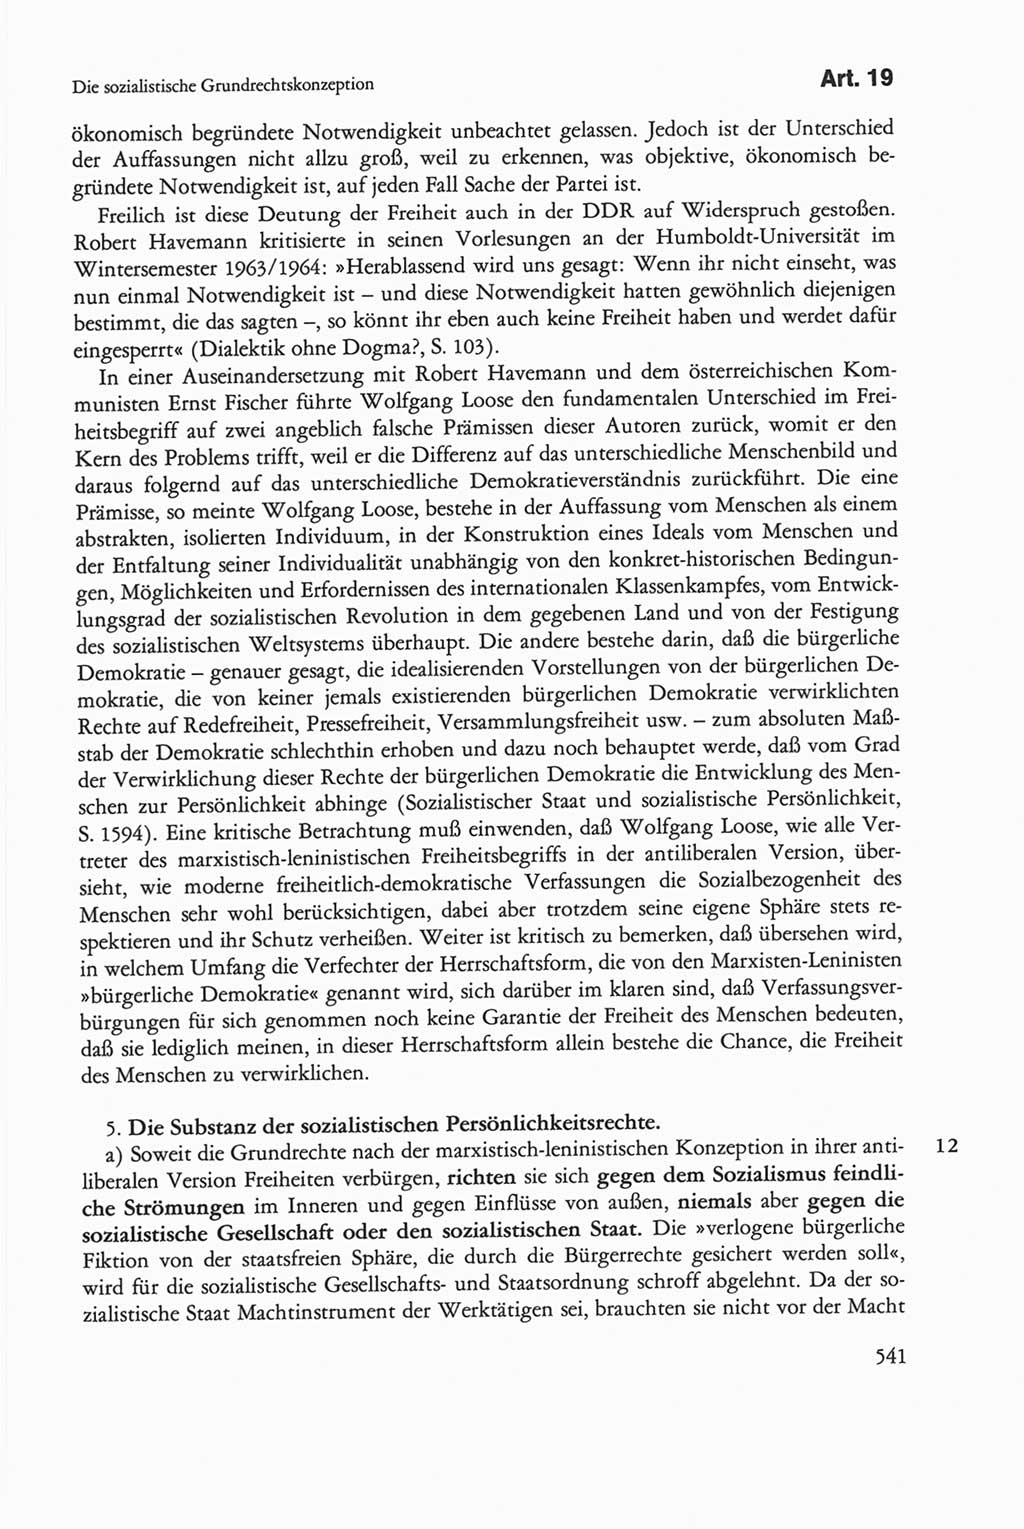 Die sozialistische Verfassung der Deutschen Demokratischen Republik (DDR), Kommentar 1982, Seite 541 (Soz. Verf. DDR Komm. 1982, S. 541)